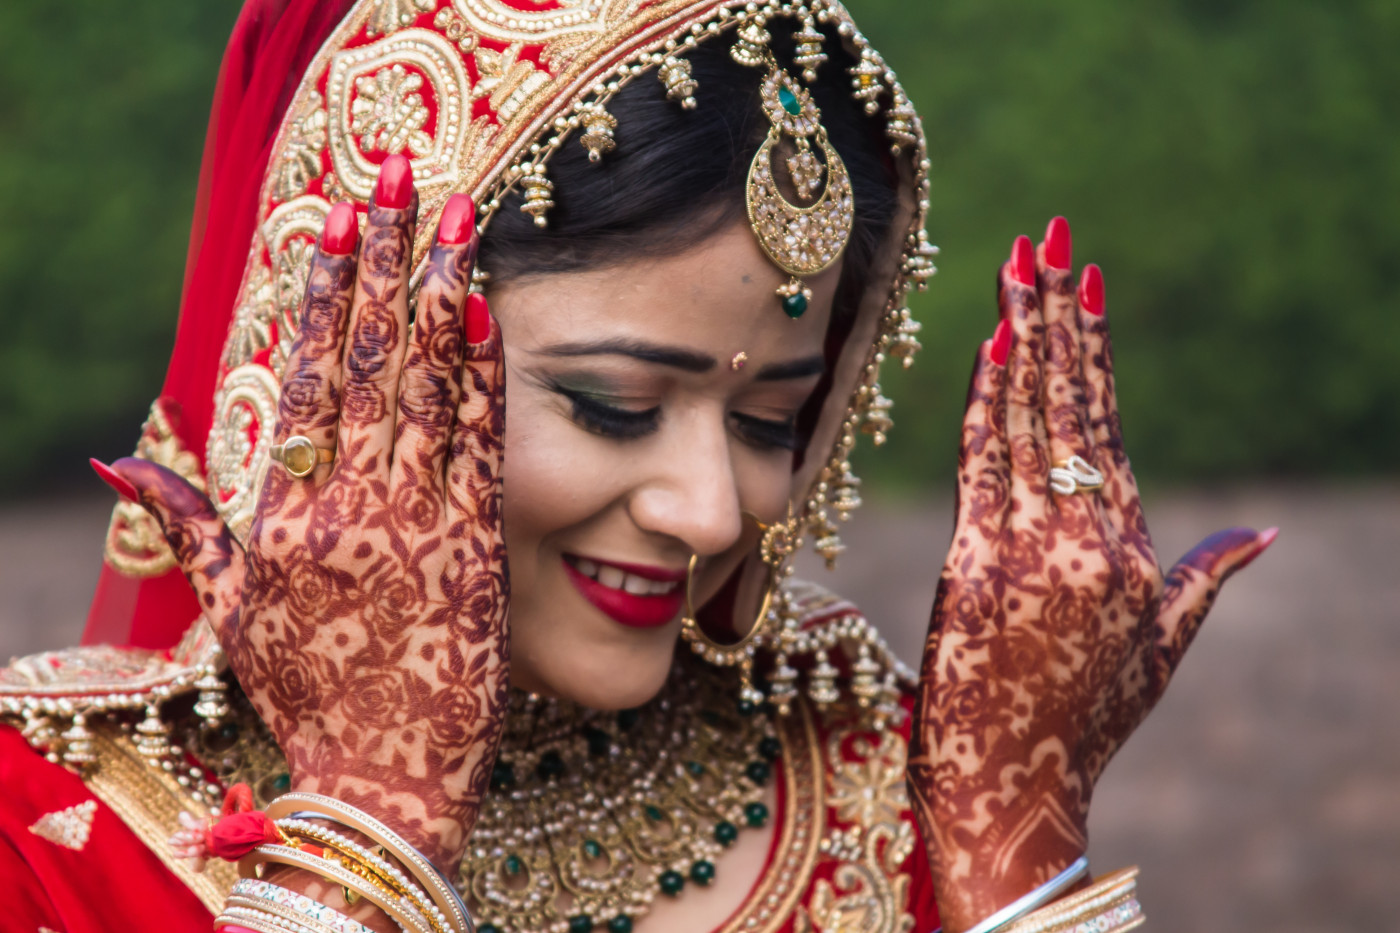 Indian Bridal Images - Free Download on Freepik